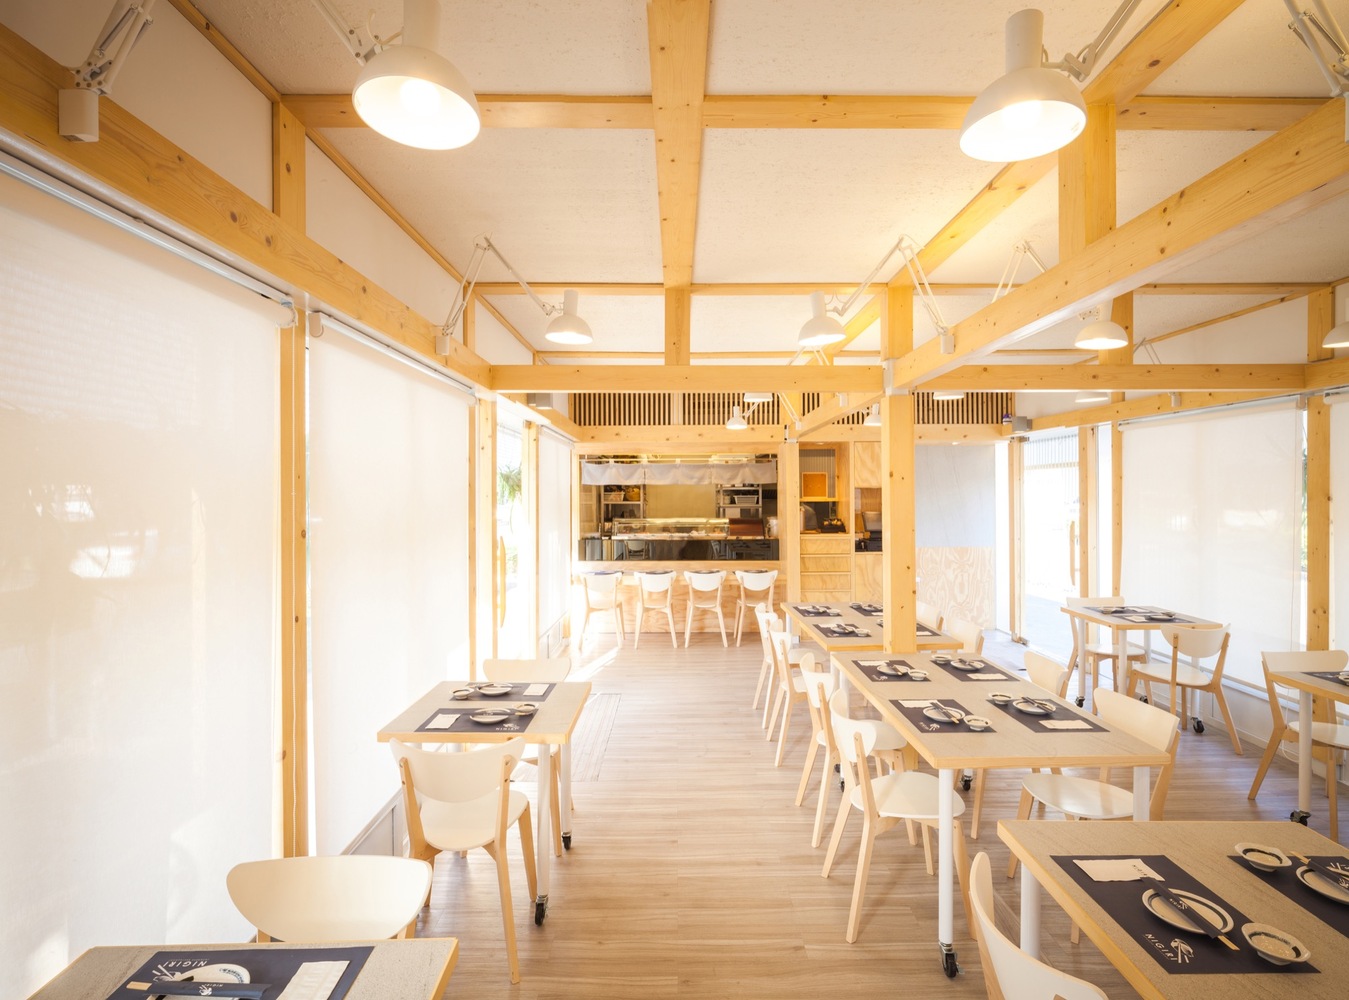 NiGiRi Sushi and Restaurant  Junsekino Architect And Design